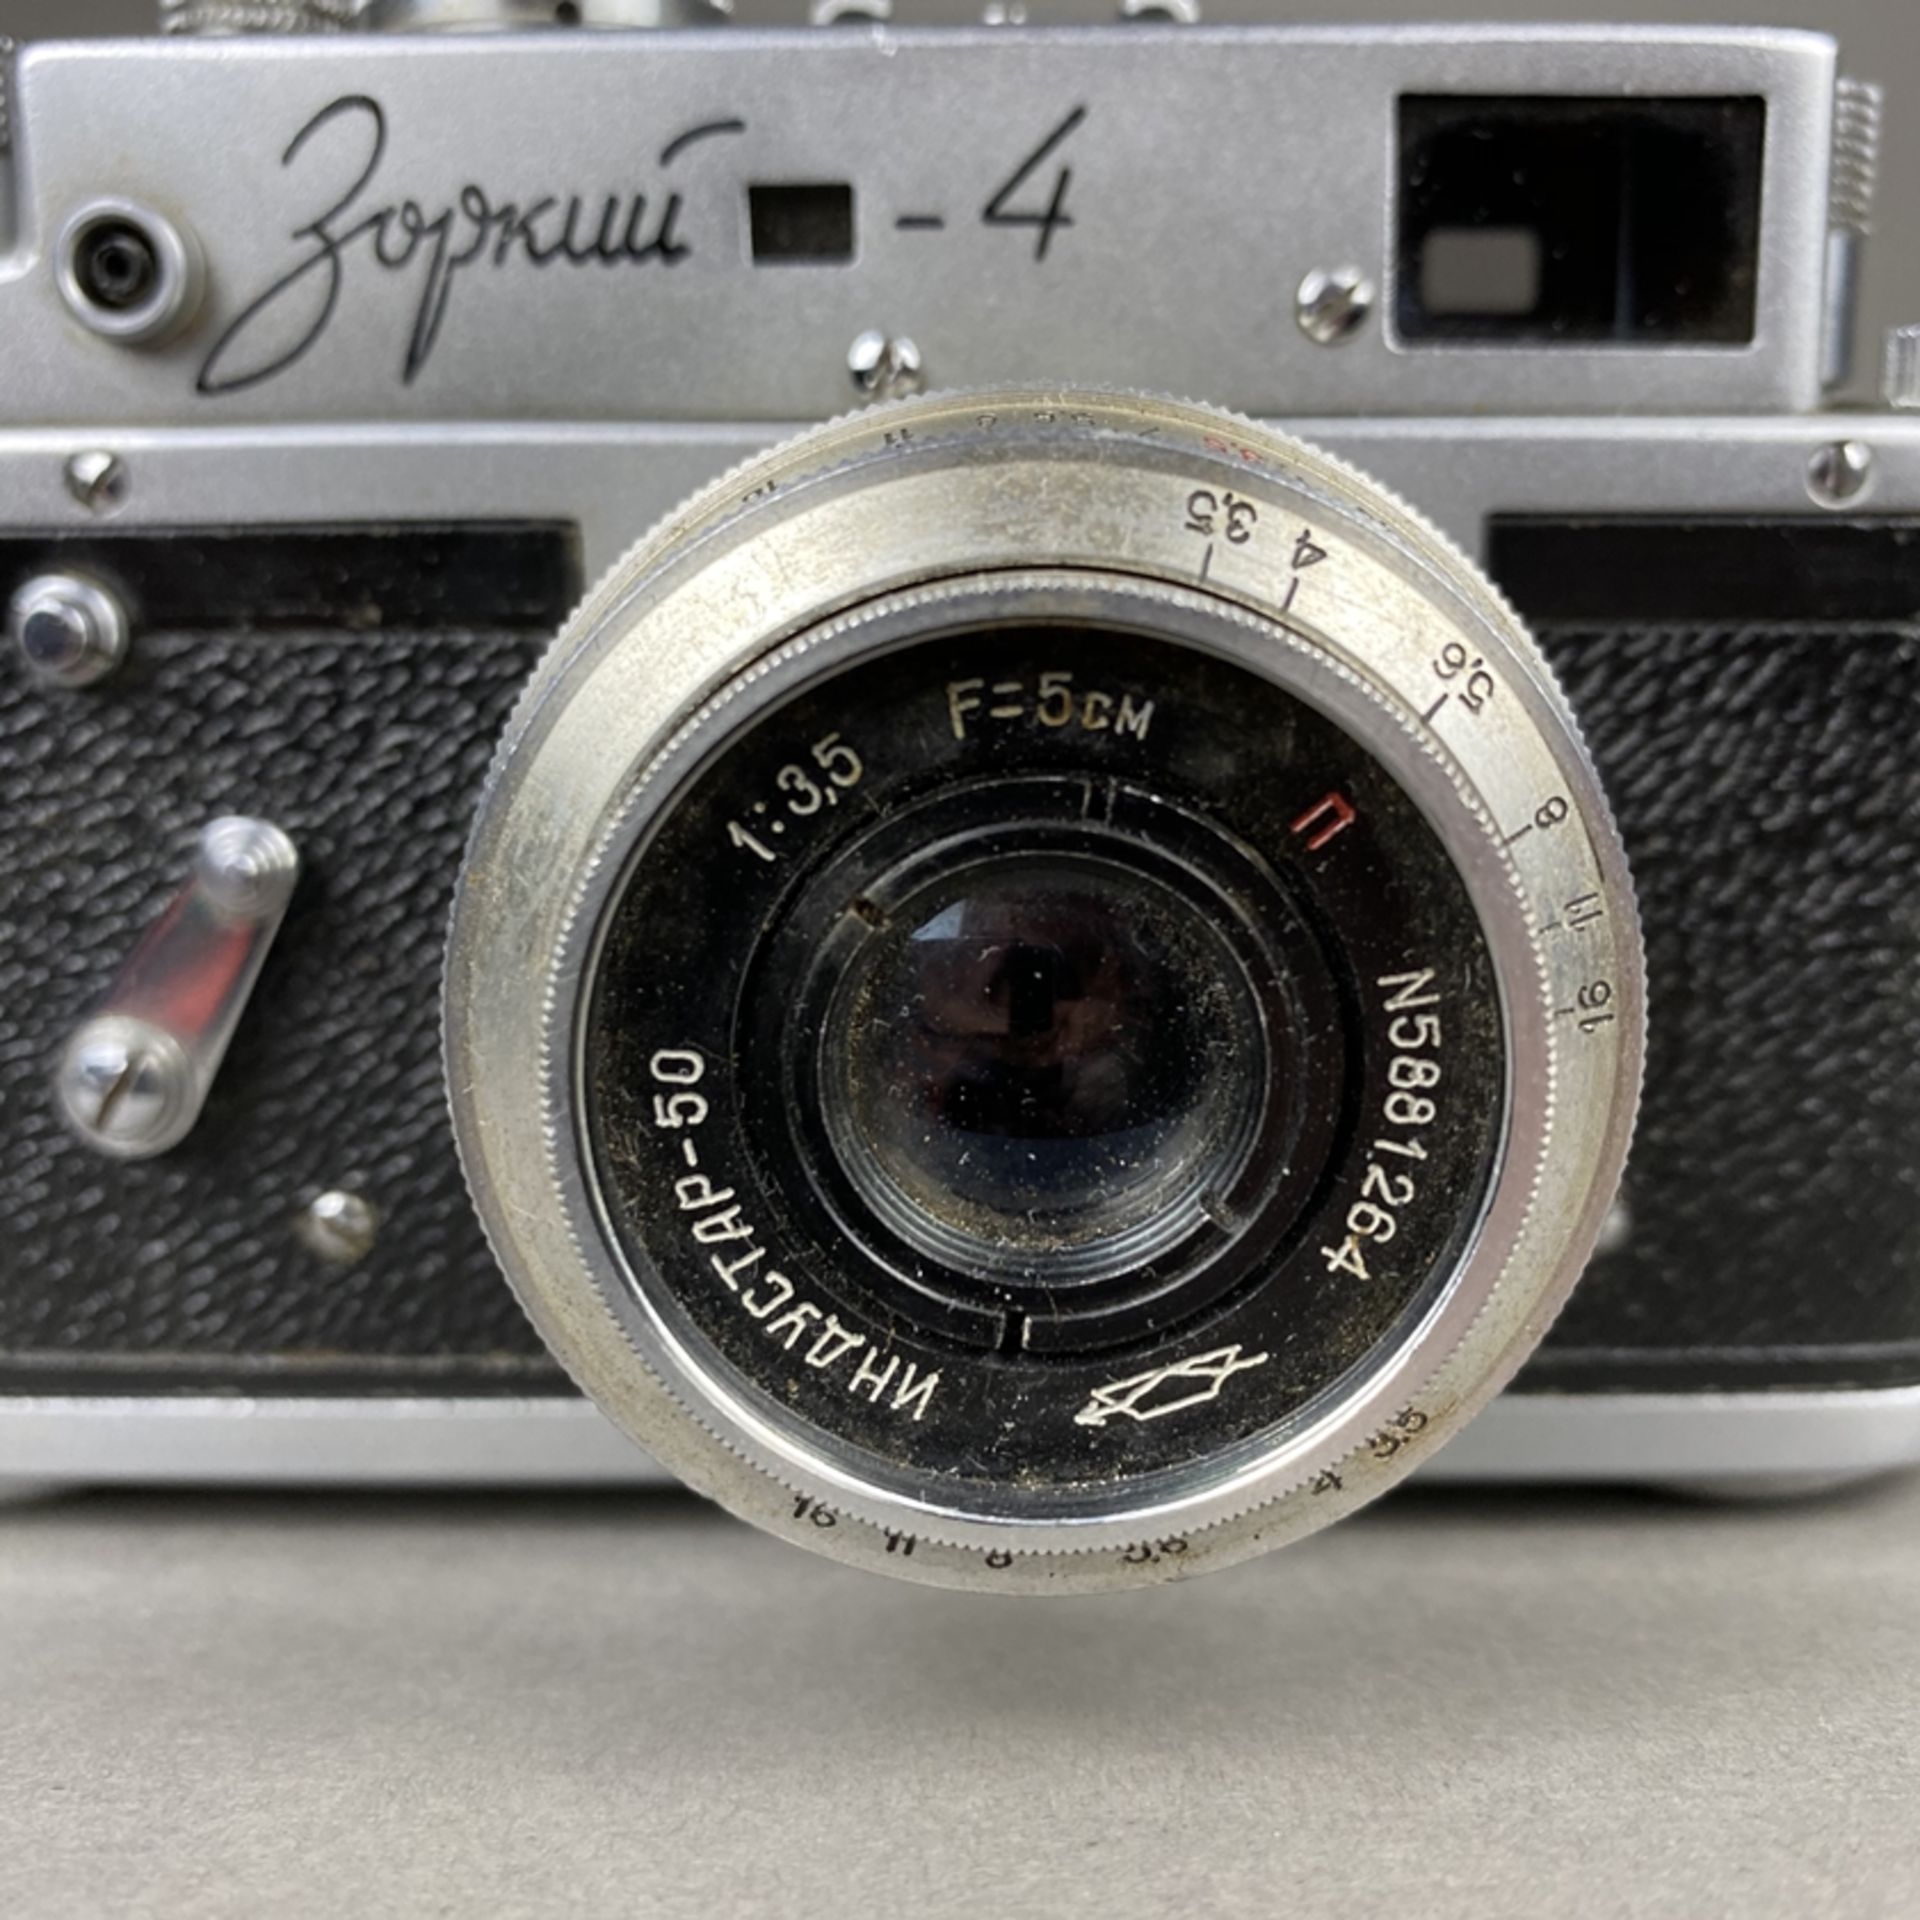 Zorki 4 - sowjetische Kleinbild-Sucherkamera, Gehäusenr. 65677066, Objektiv Industar 50, 1:35, F= - Bild 2 aus 6